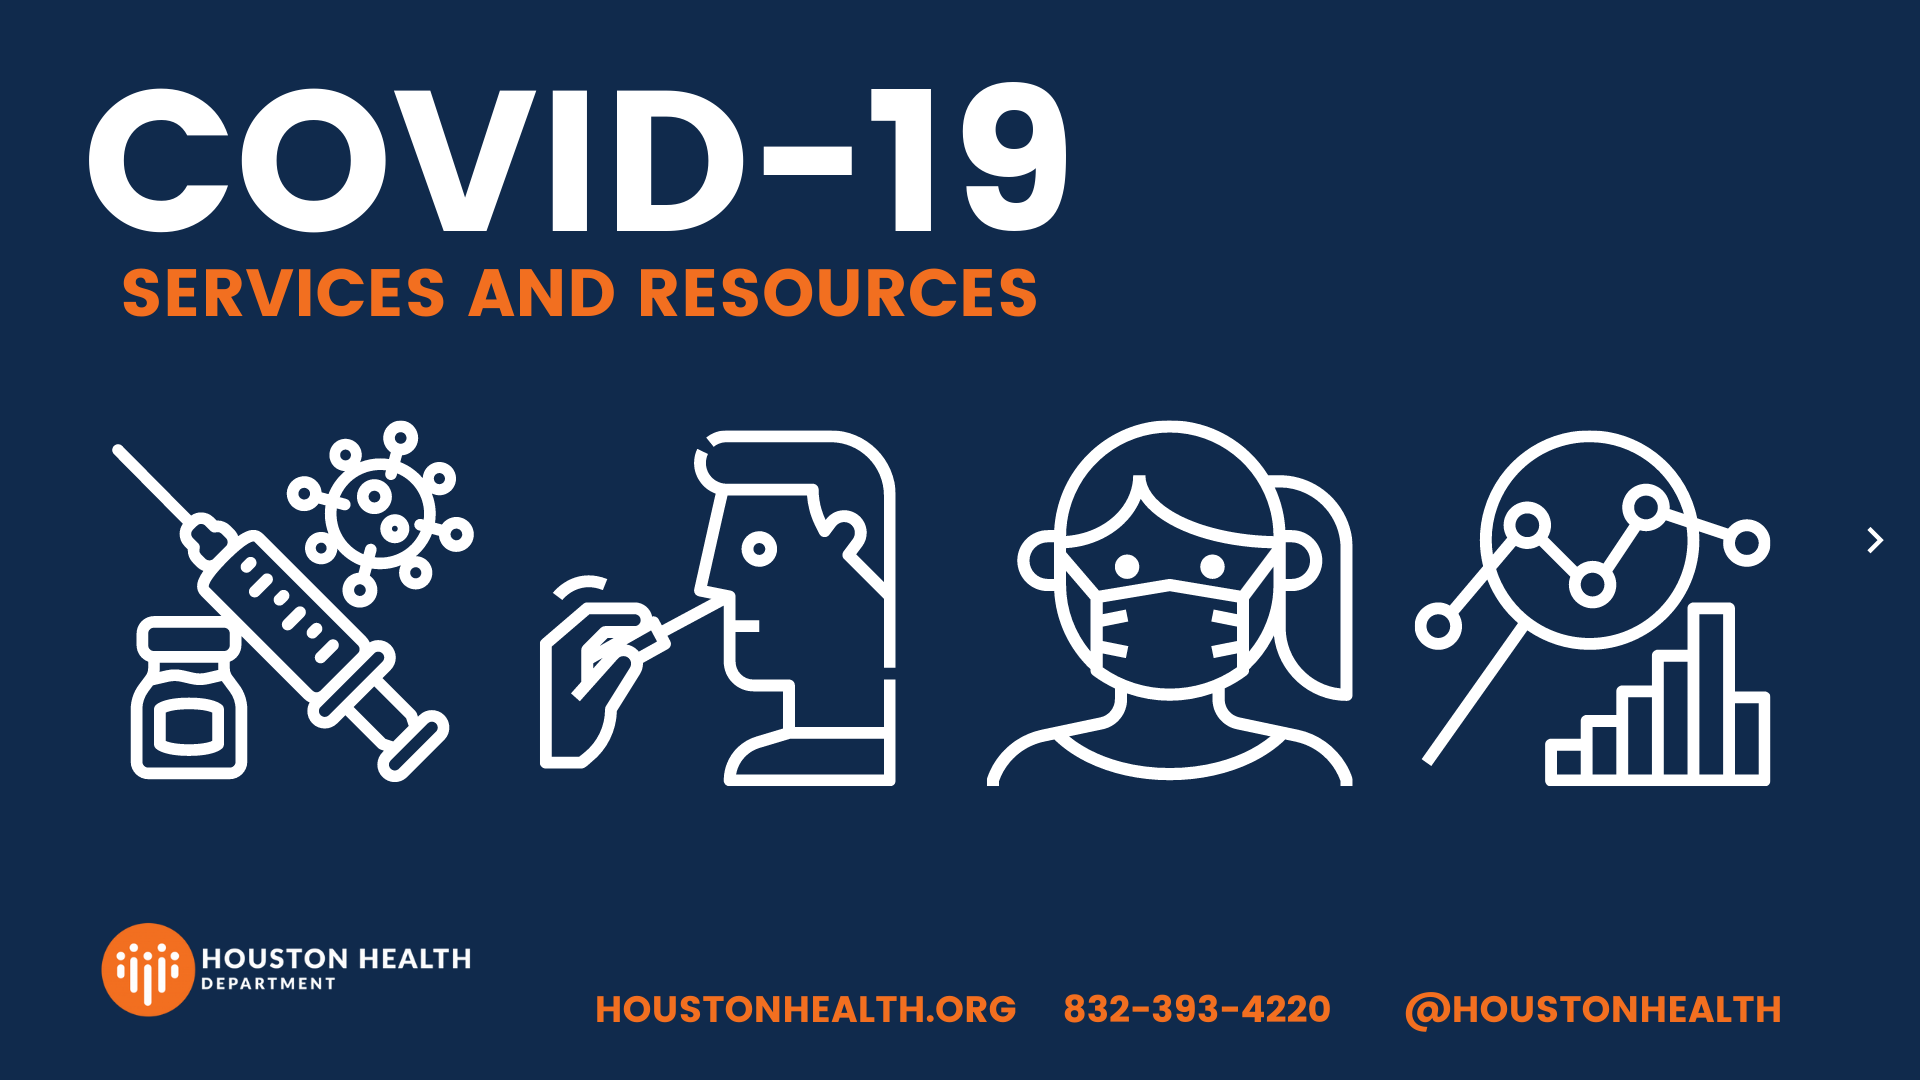 Icônes montrant la vaccination, les tests, le masquage et les graphiques de données. Le titre indique "Services et ressources Covid-19". Le logo du Houston Health Department se trouve en bas à gauche.